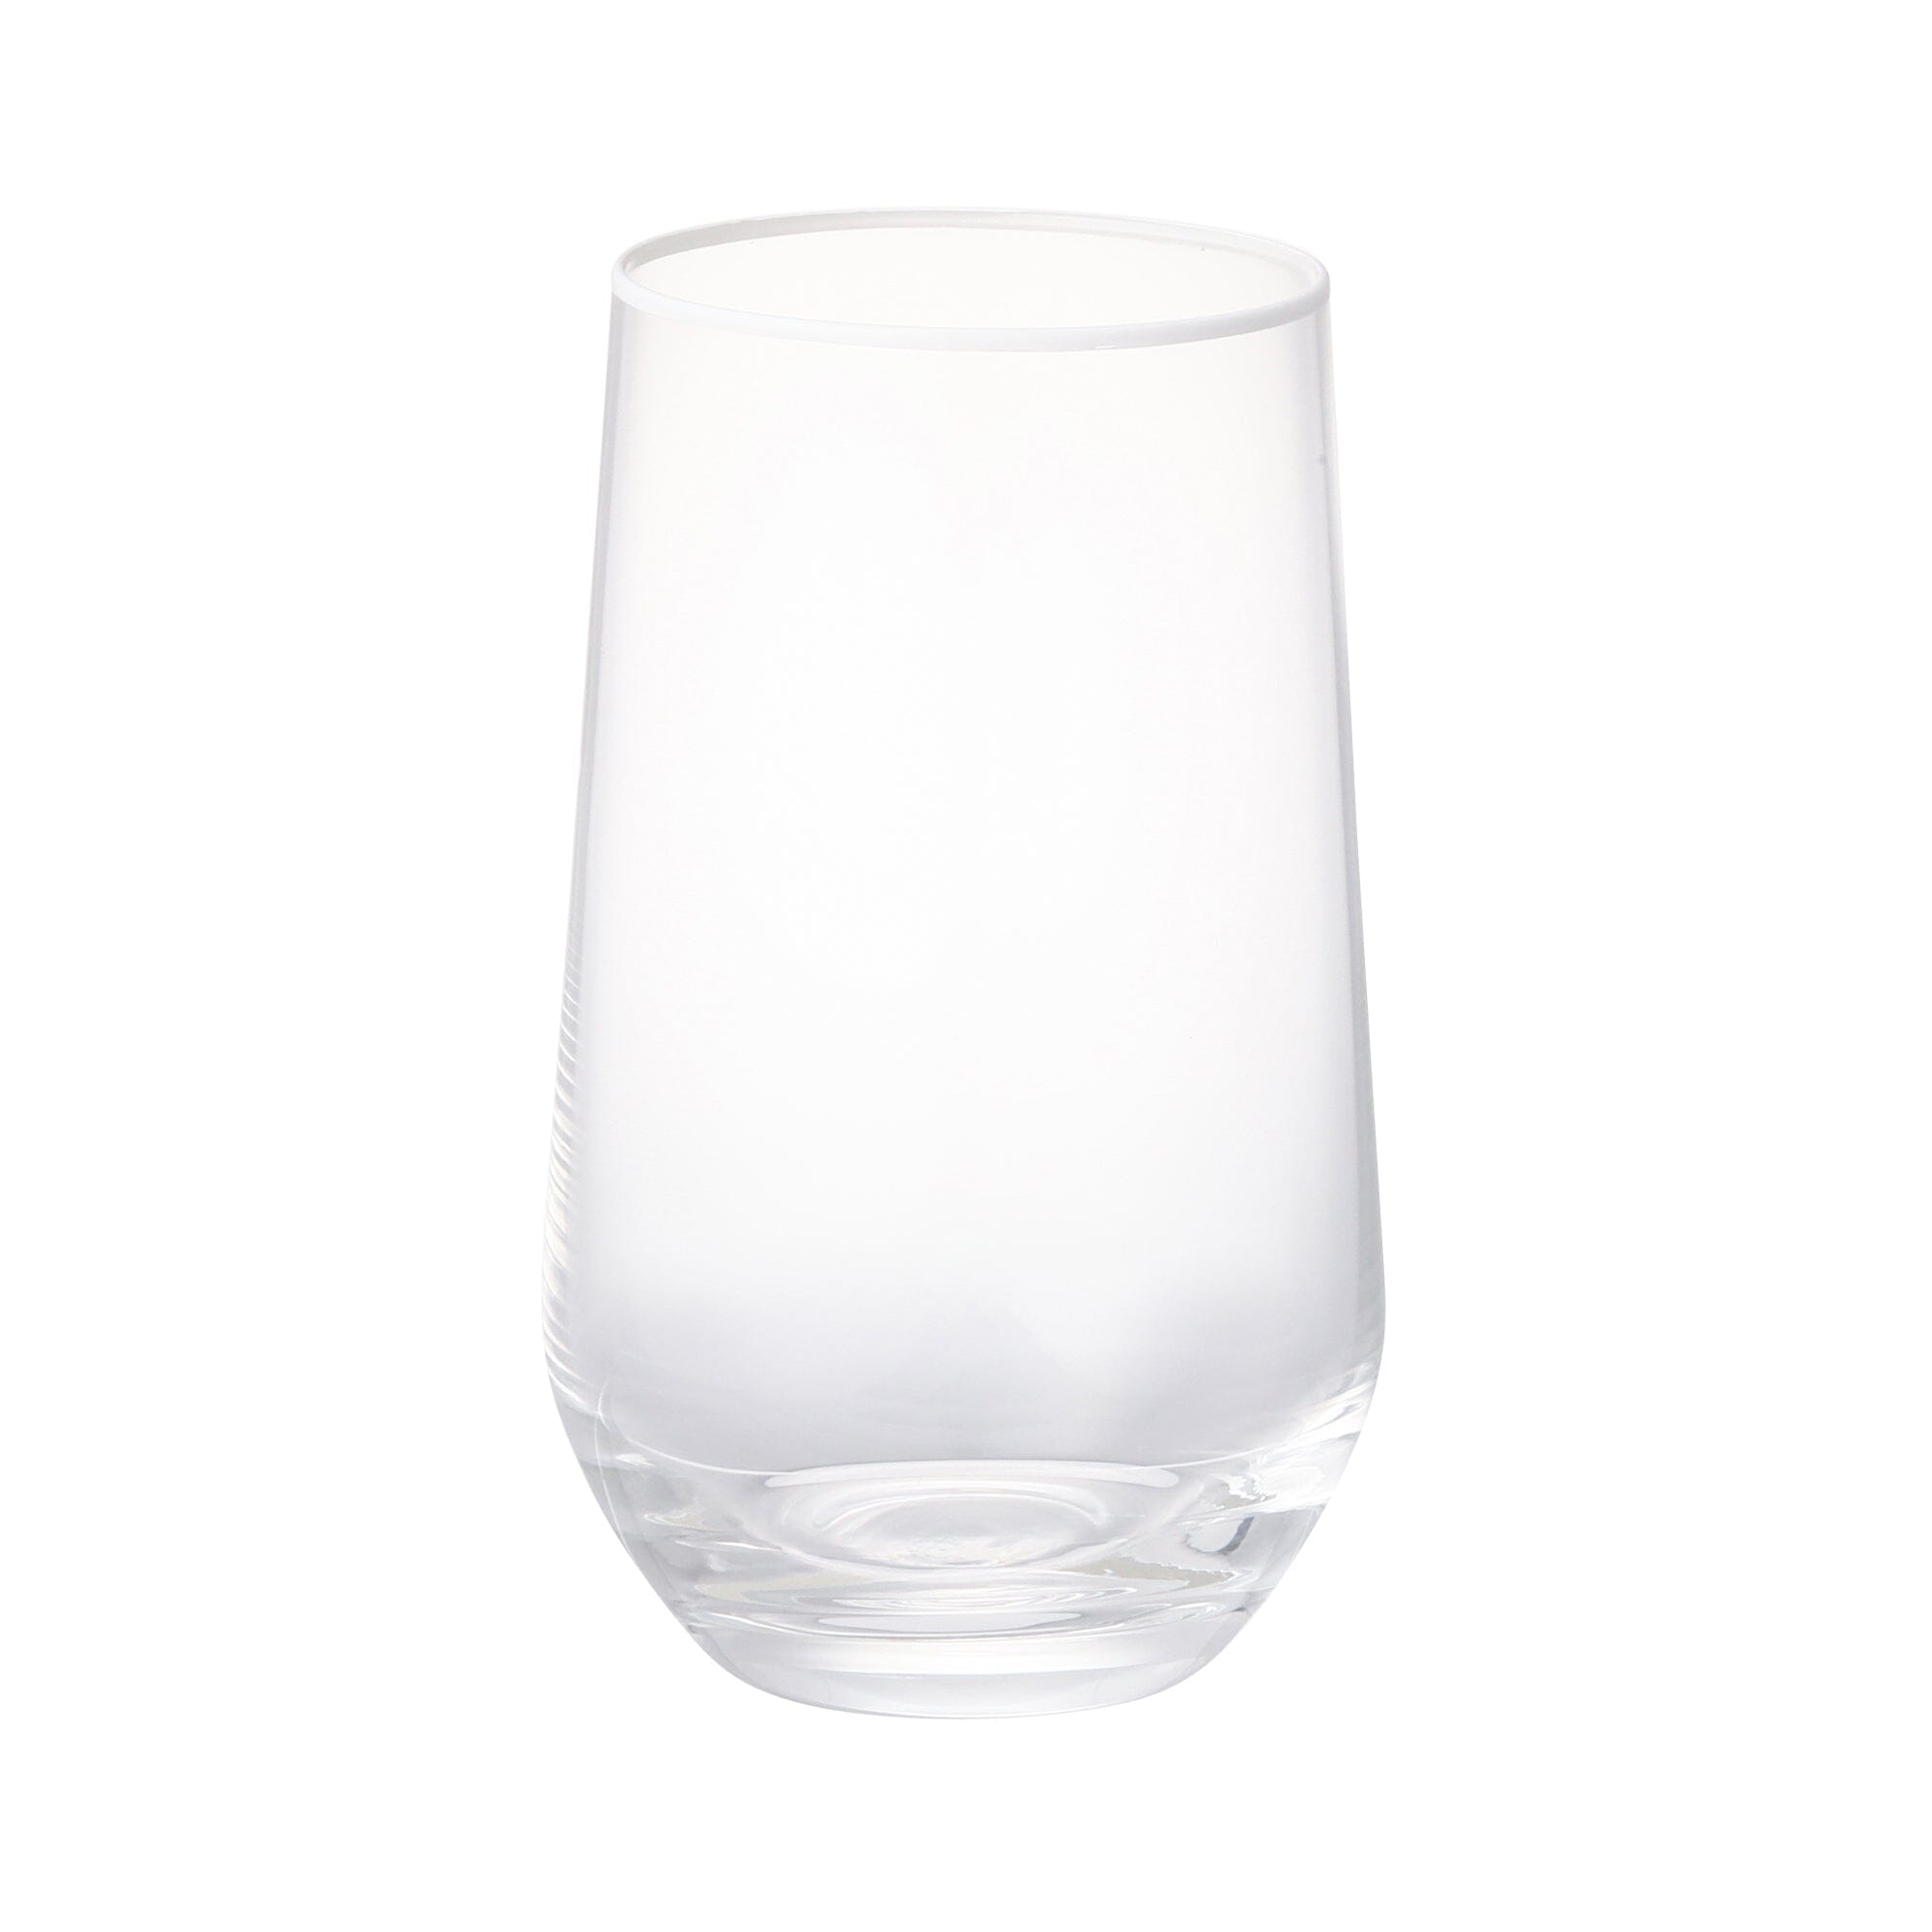 COLORRIM 高身水杯2件透明